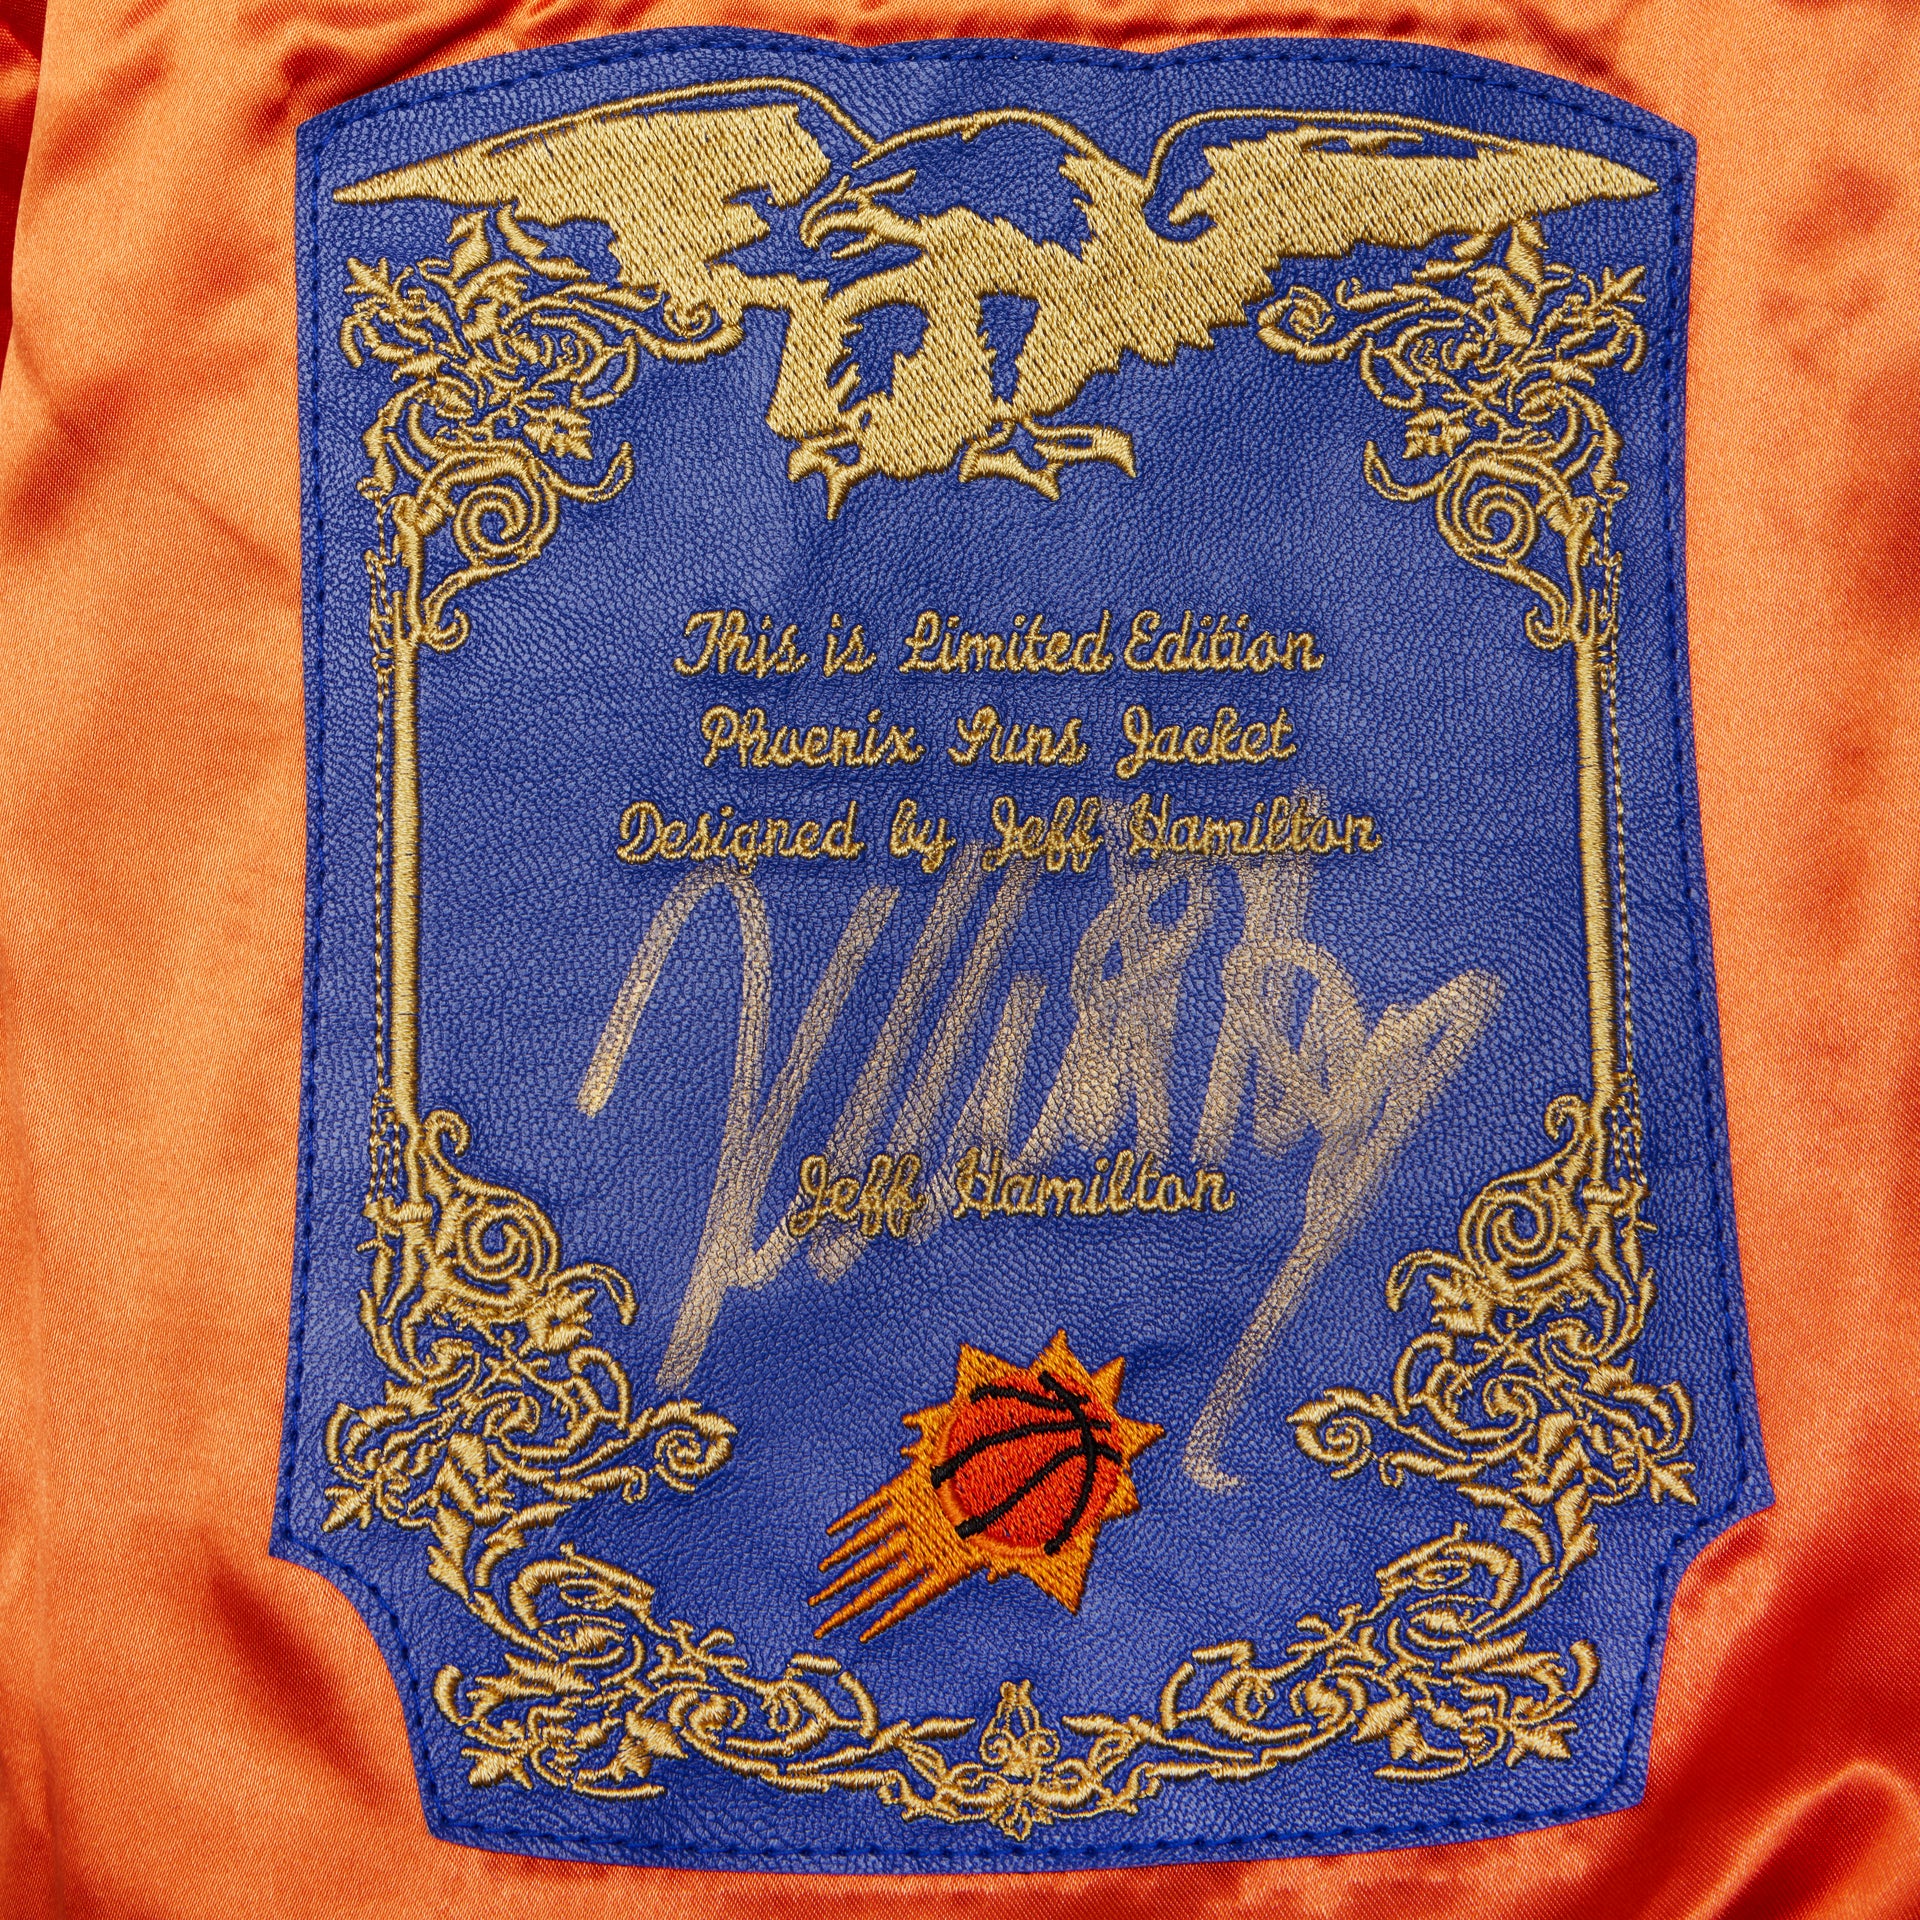 Maker of Jacket Fashion Jackets Phoenix Suns Pro Player NBA Basketball Leather